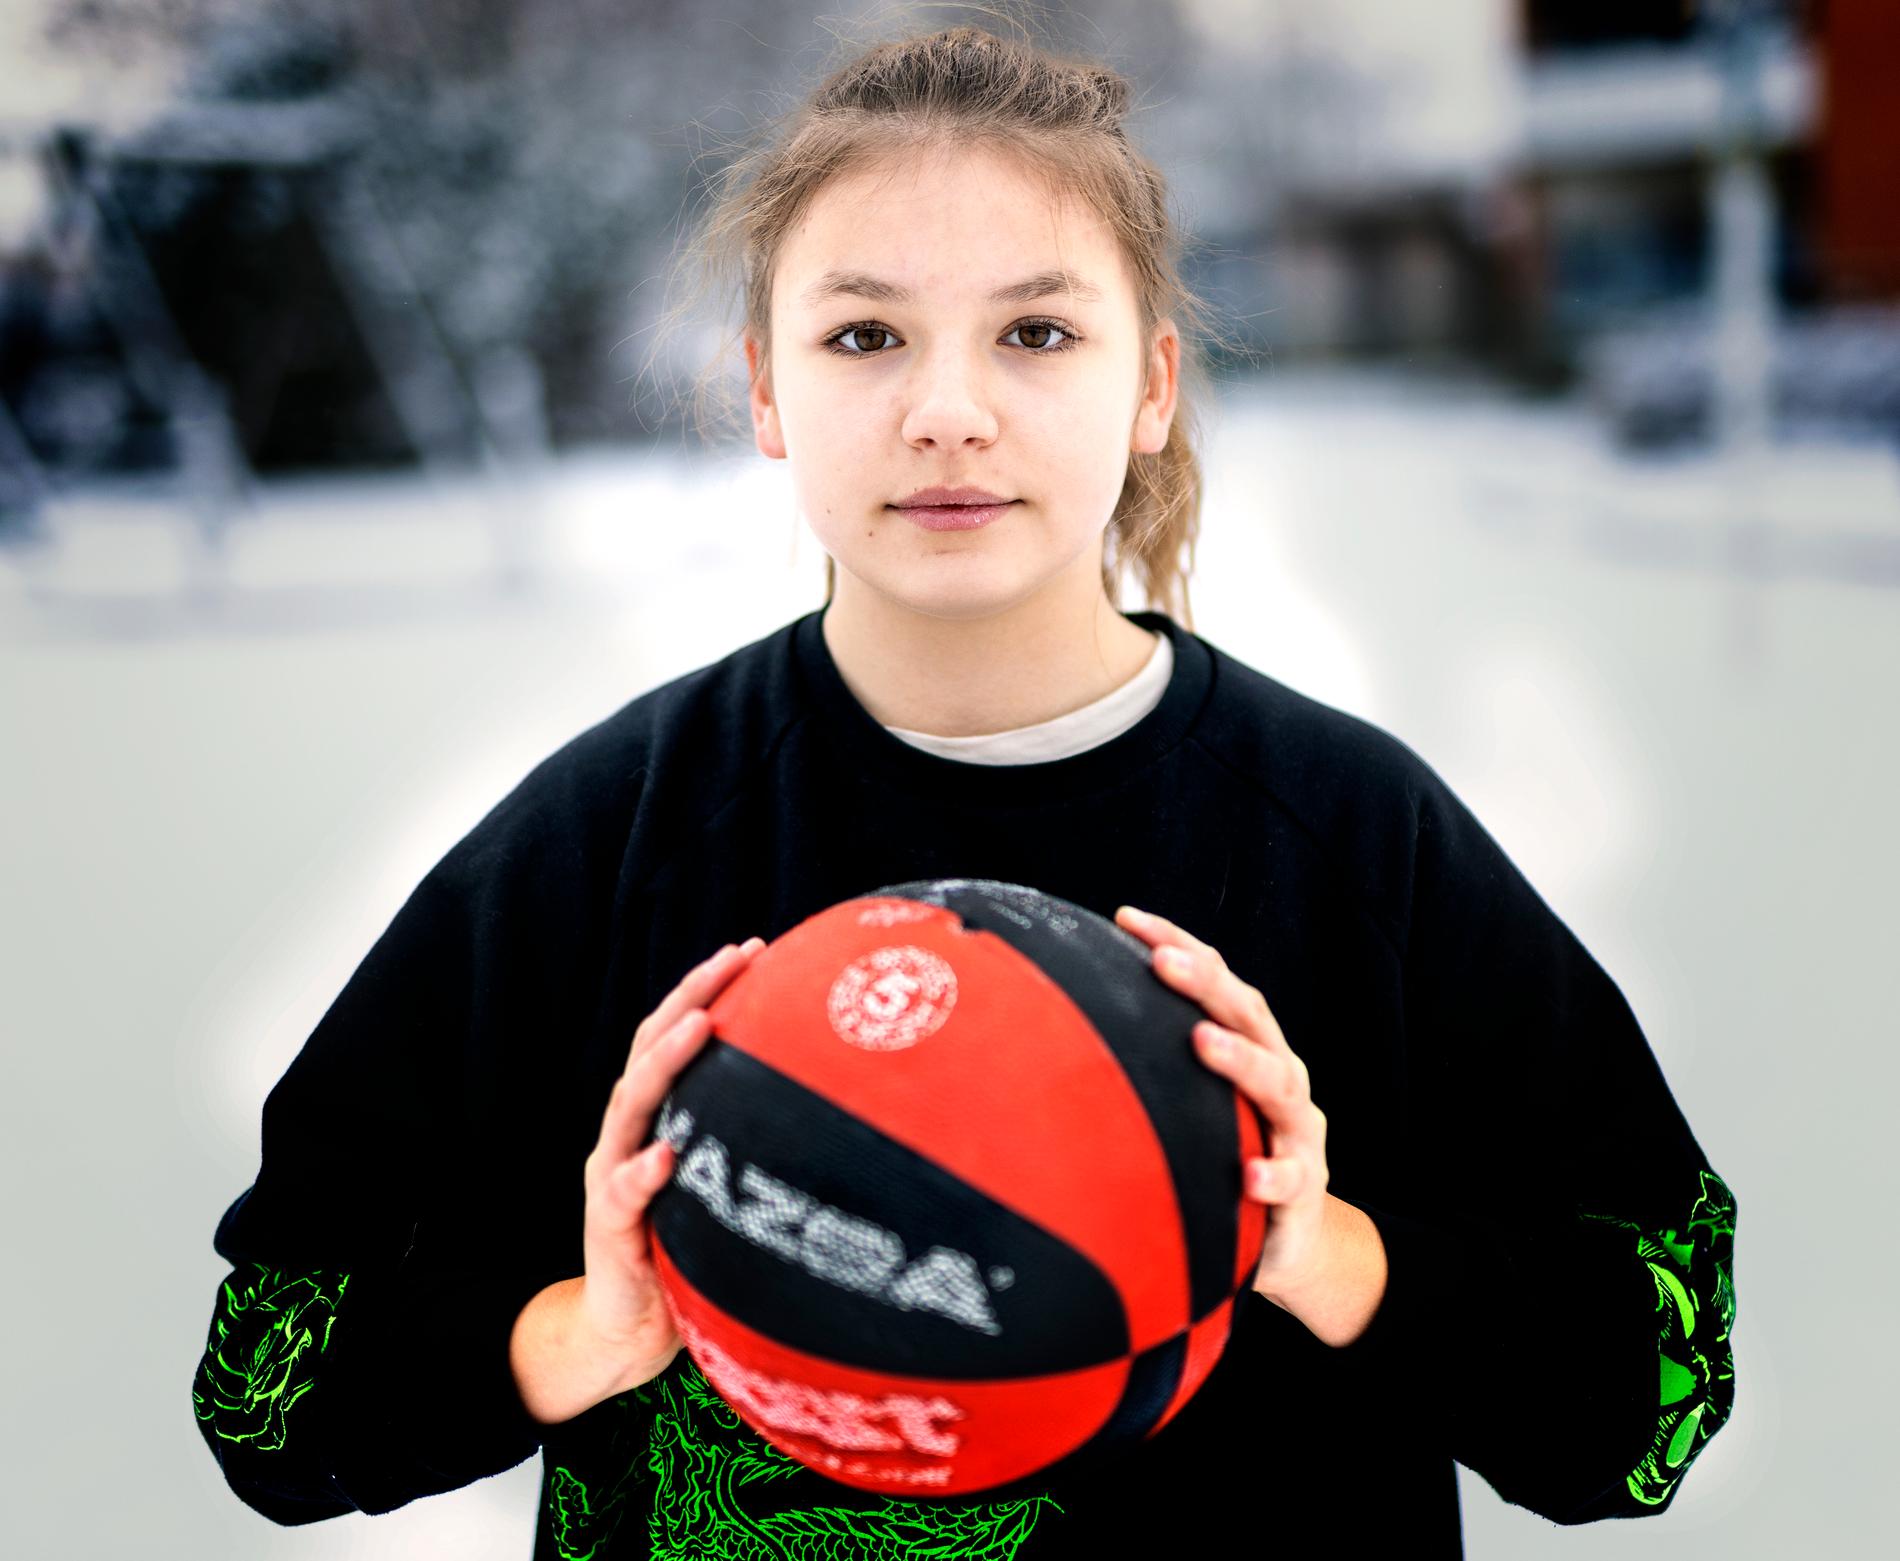 ”Att spela basket var min barndomsdröm. I Sverige har jag börjat spela, det känns mycket bra”, säger Lera.